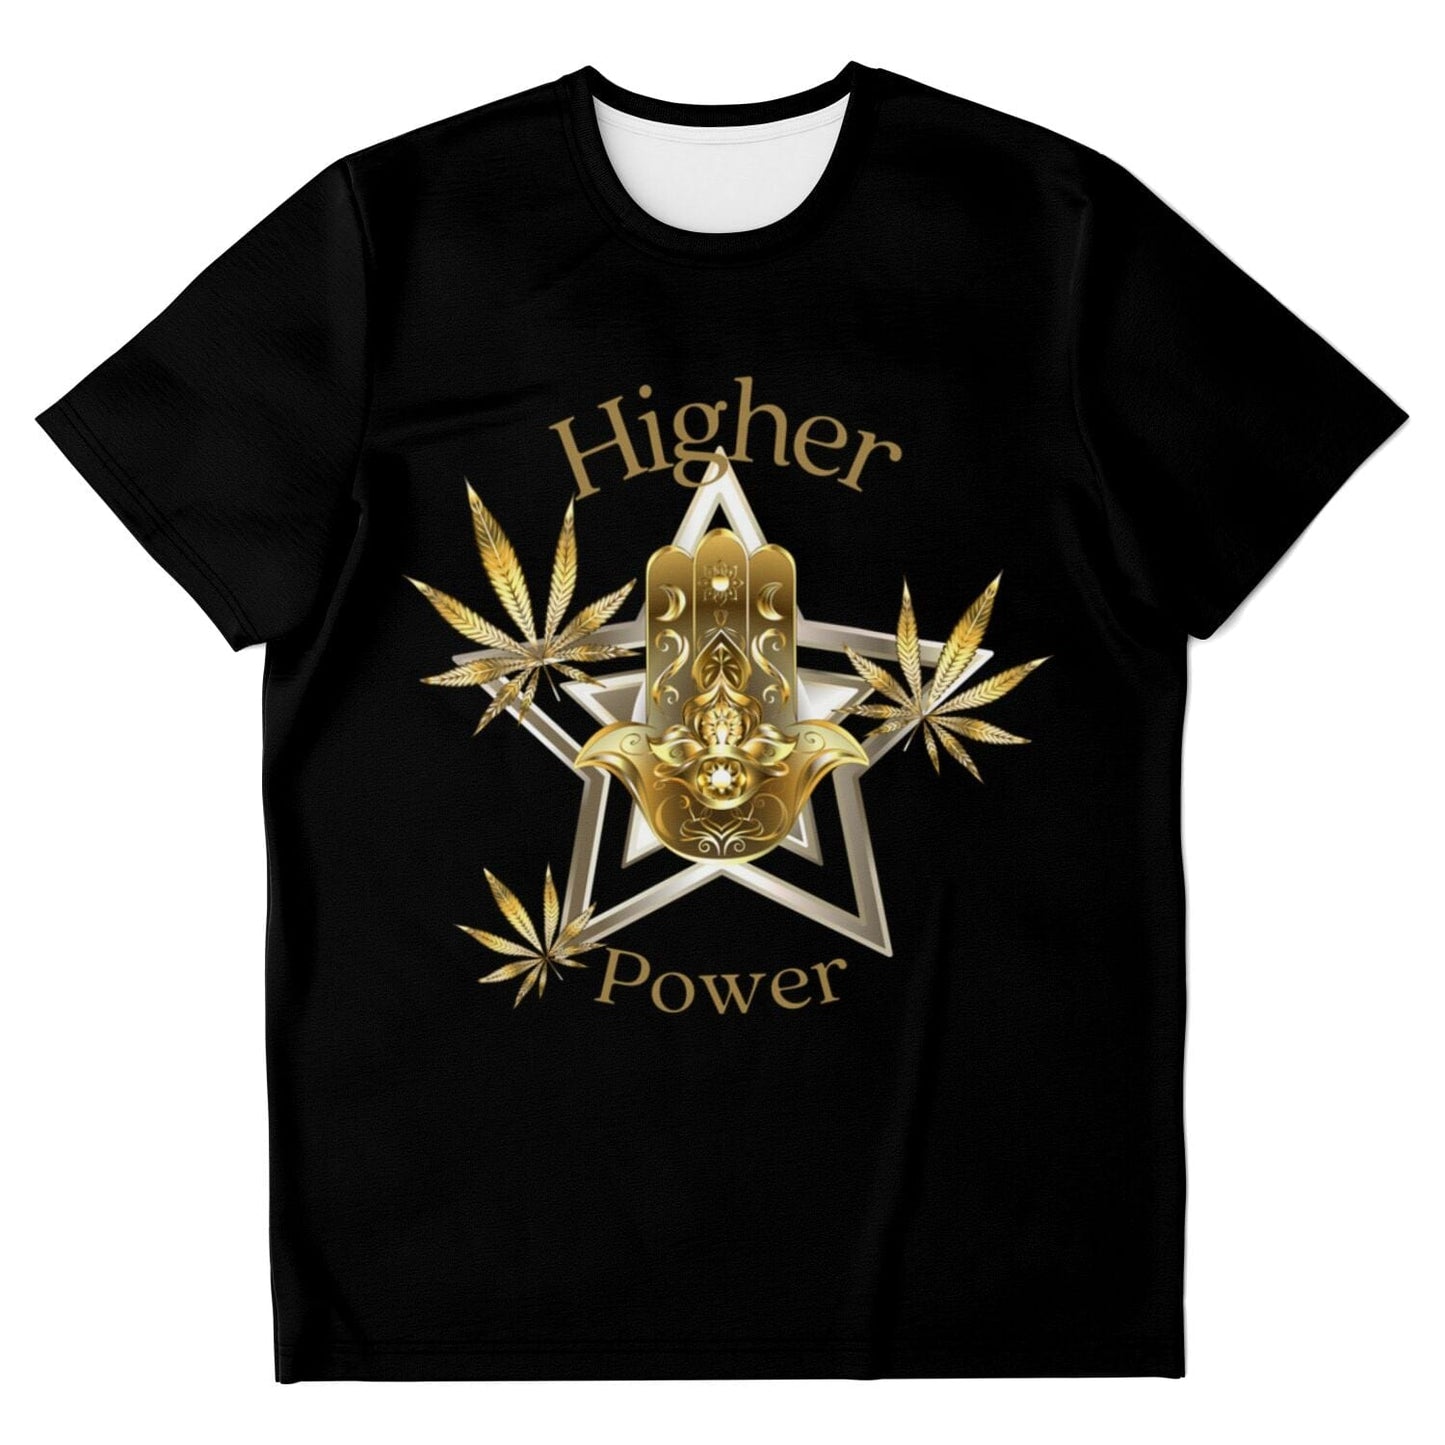 Higher Power T-shirt